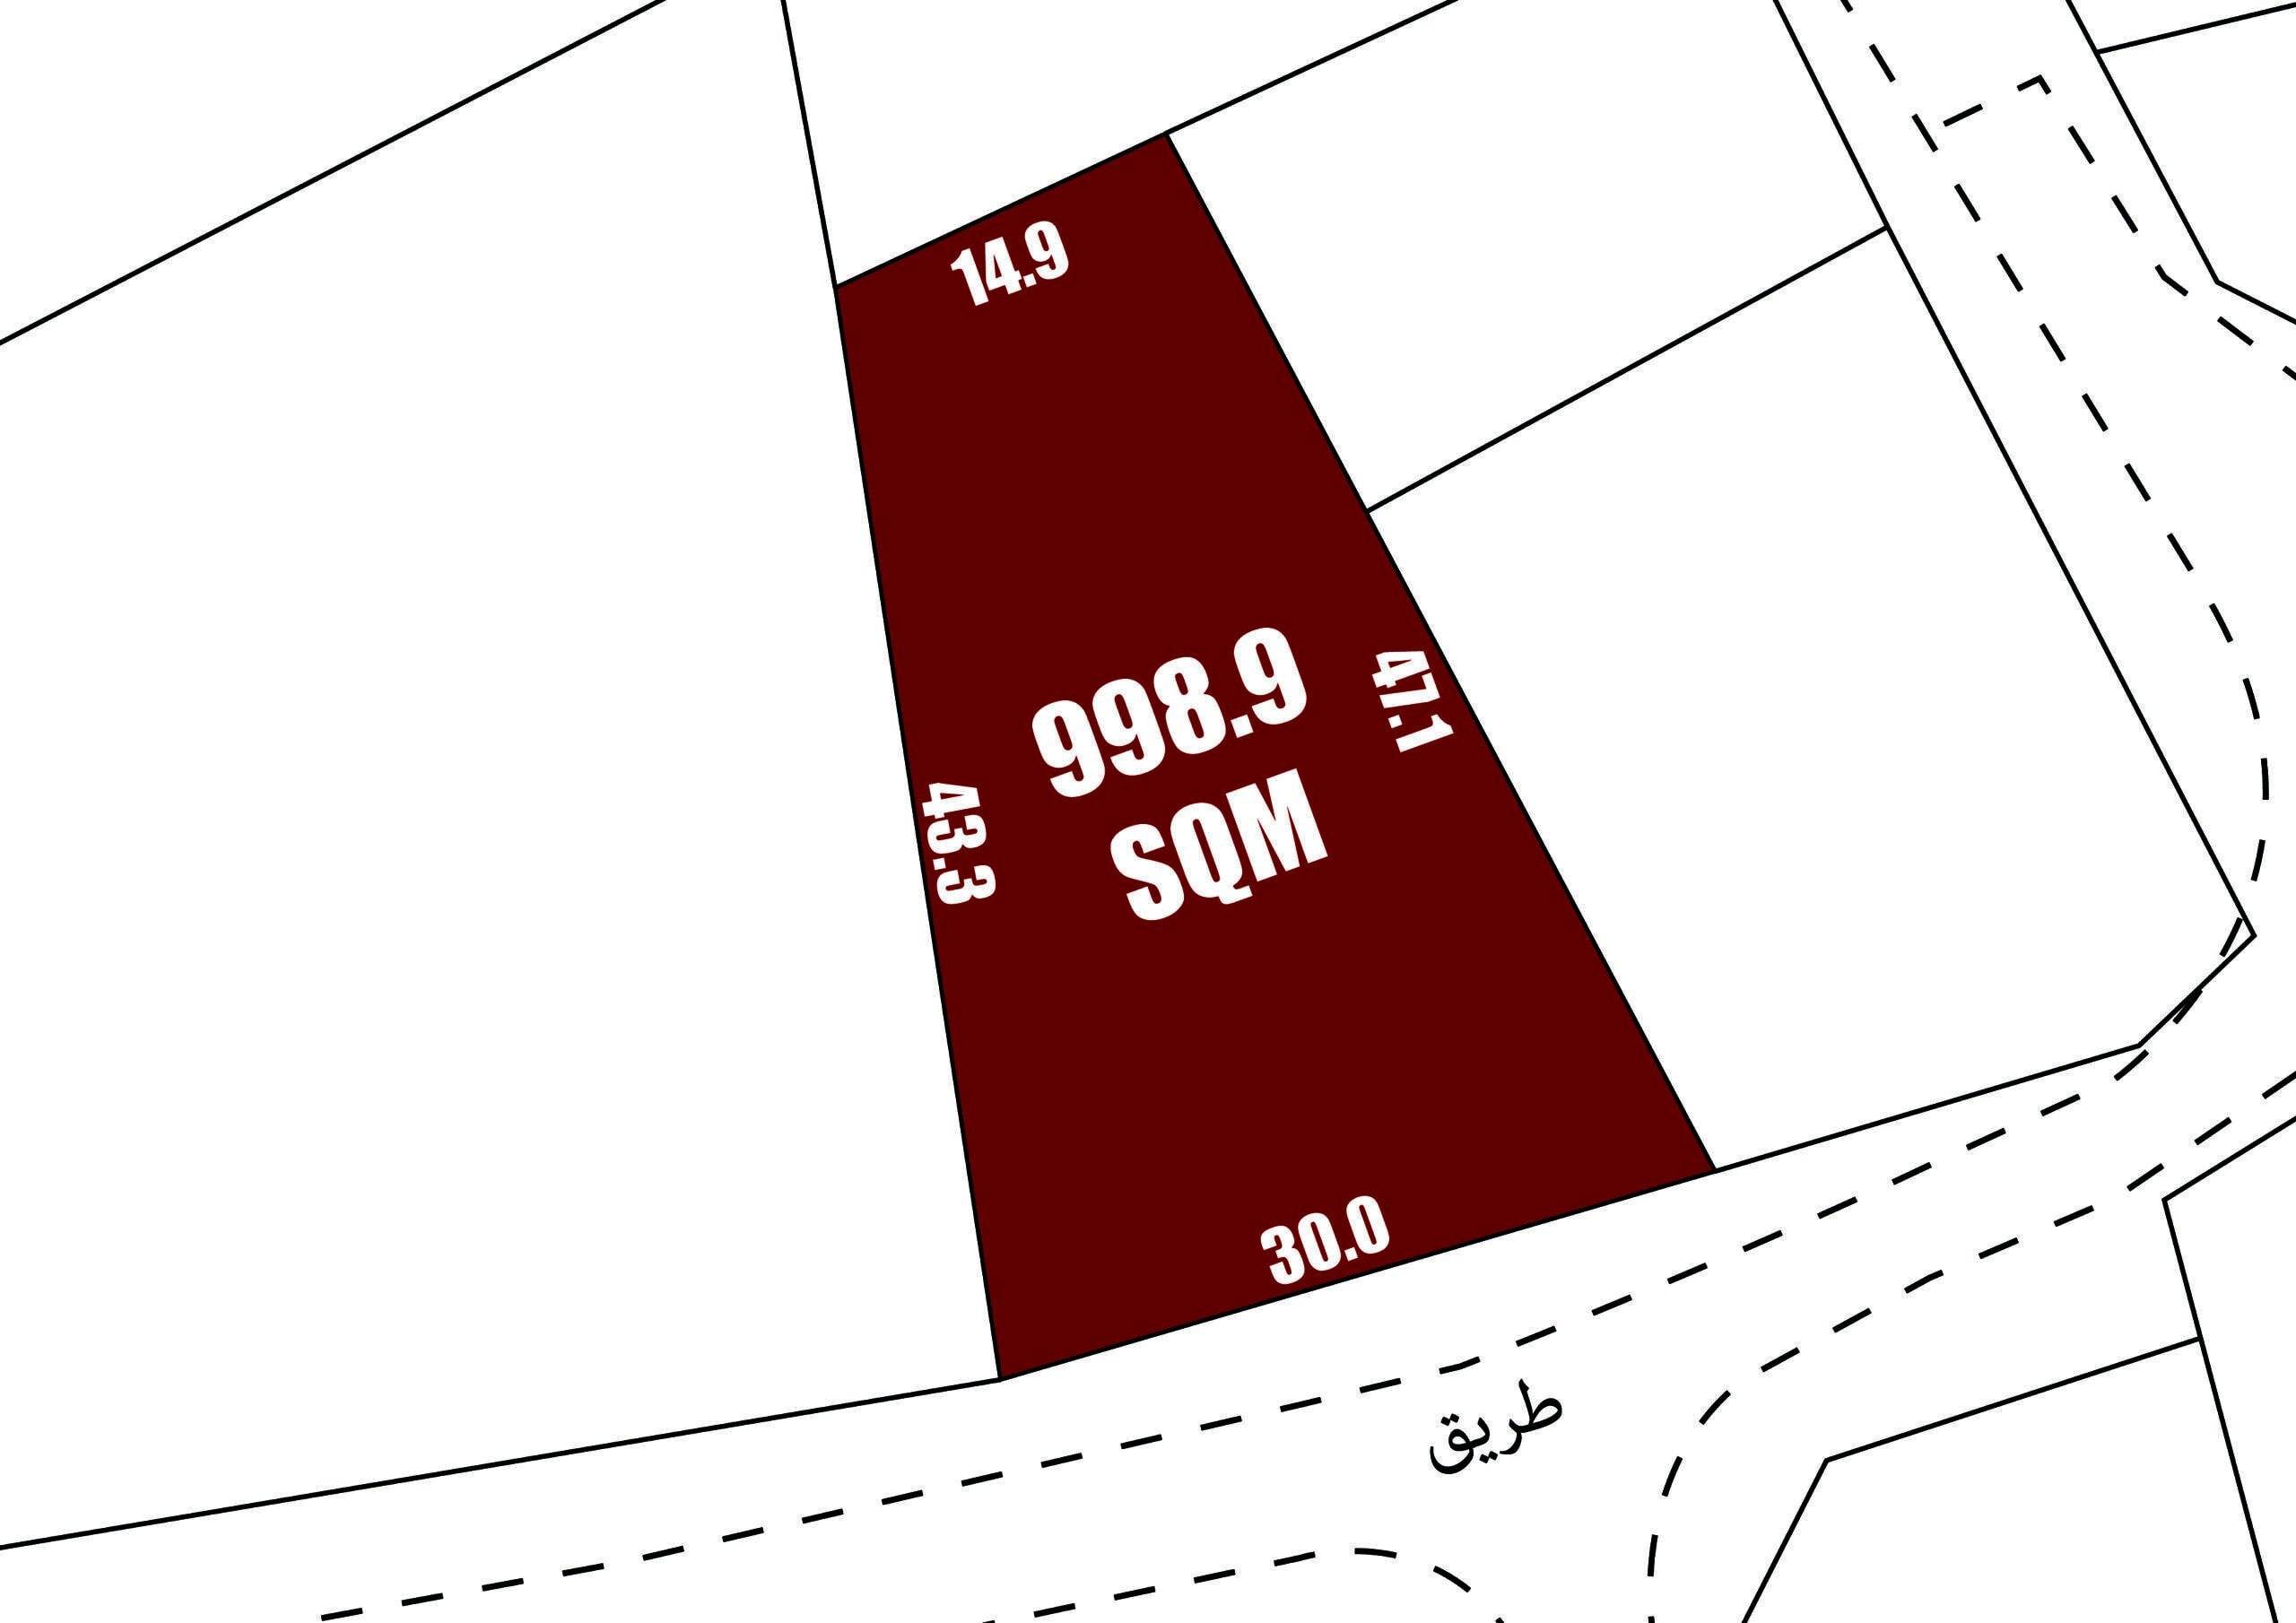 ارض للبيع في سند بمساحة ٩٩٨.٩ متر مربع | هاوس مي